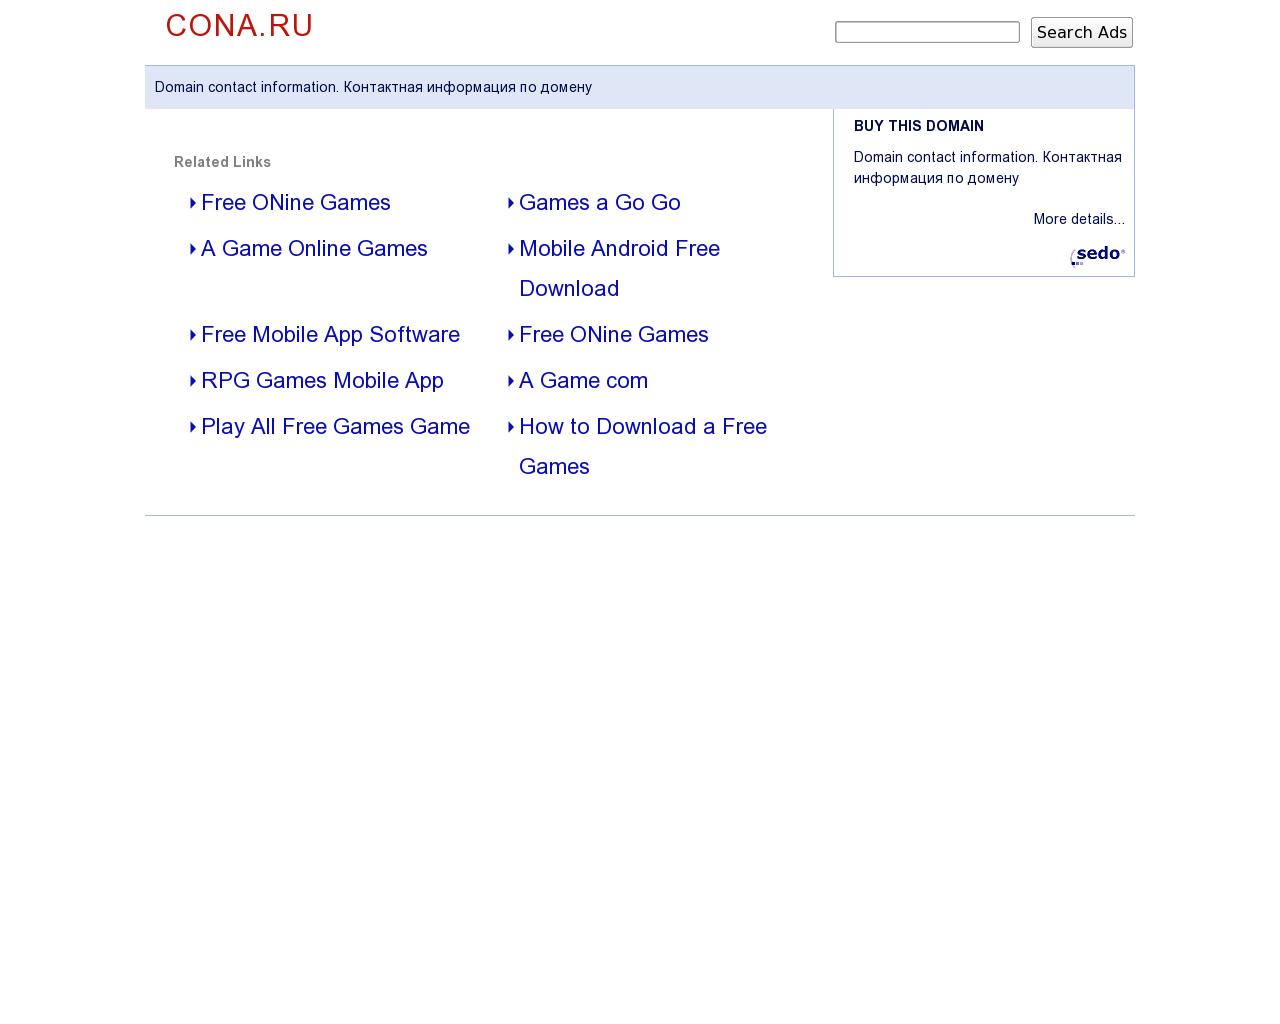 Изображение сайта cona.ru в разрешении 1280x1024